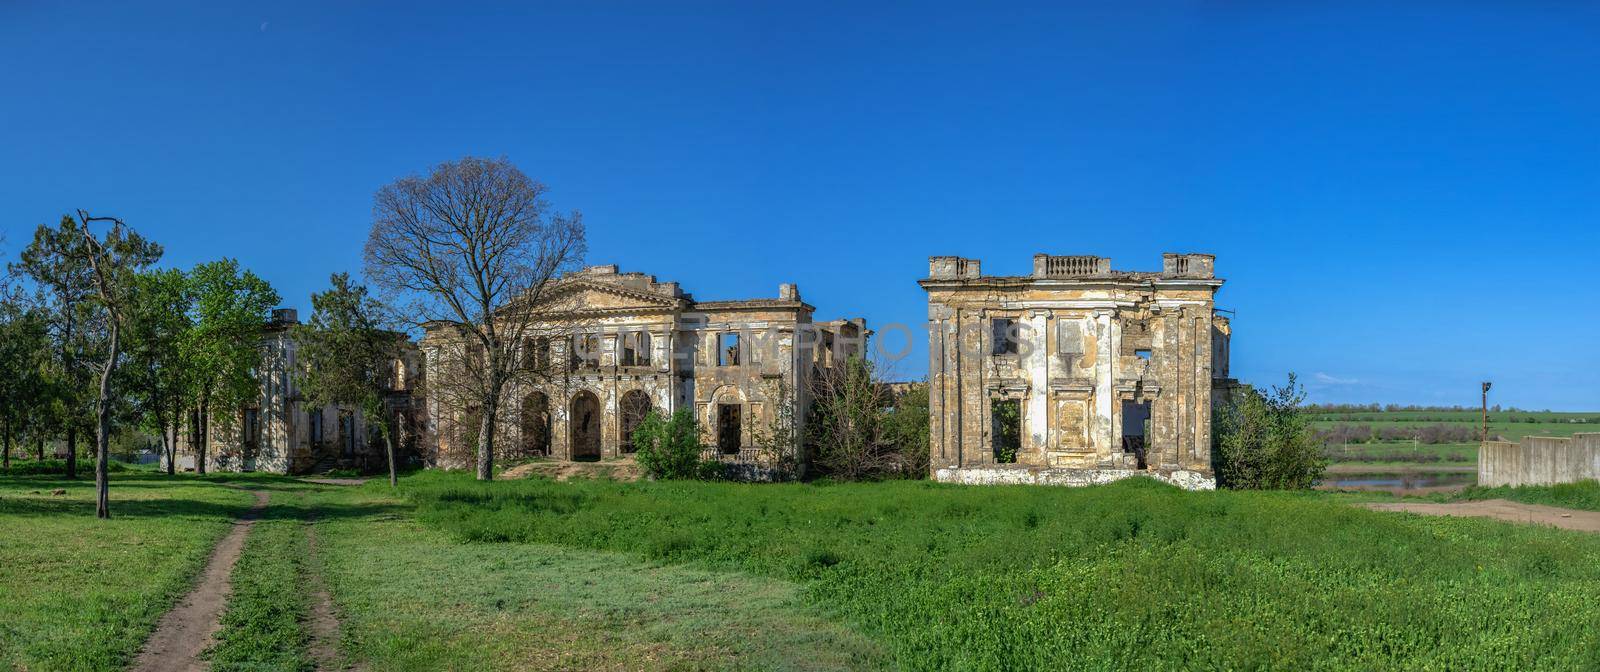 Dubiecki manor in Vasylievka, Odessa region, Ukraine by Multipedia